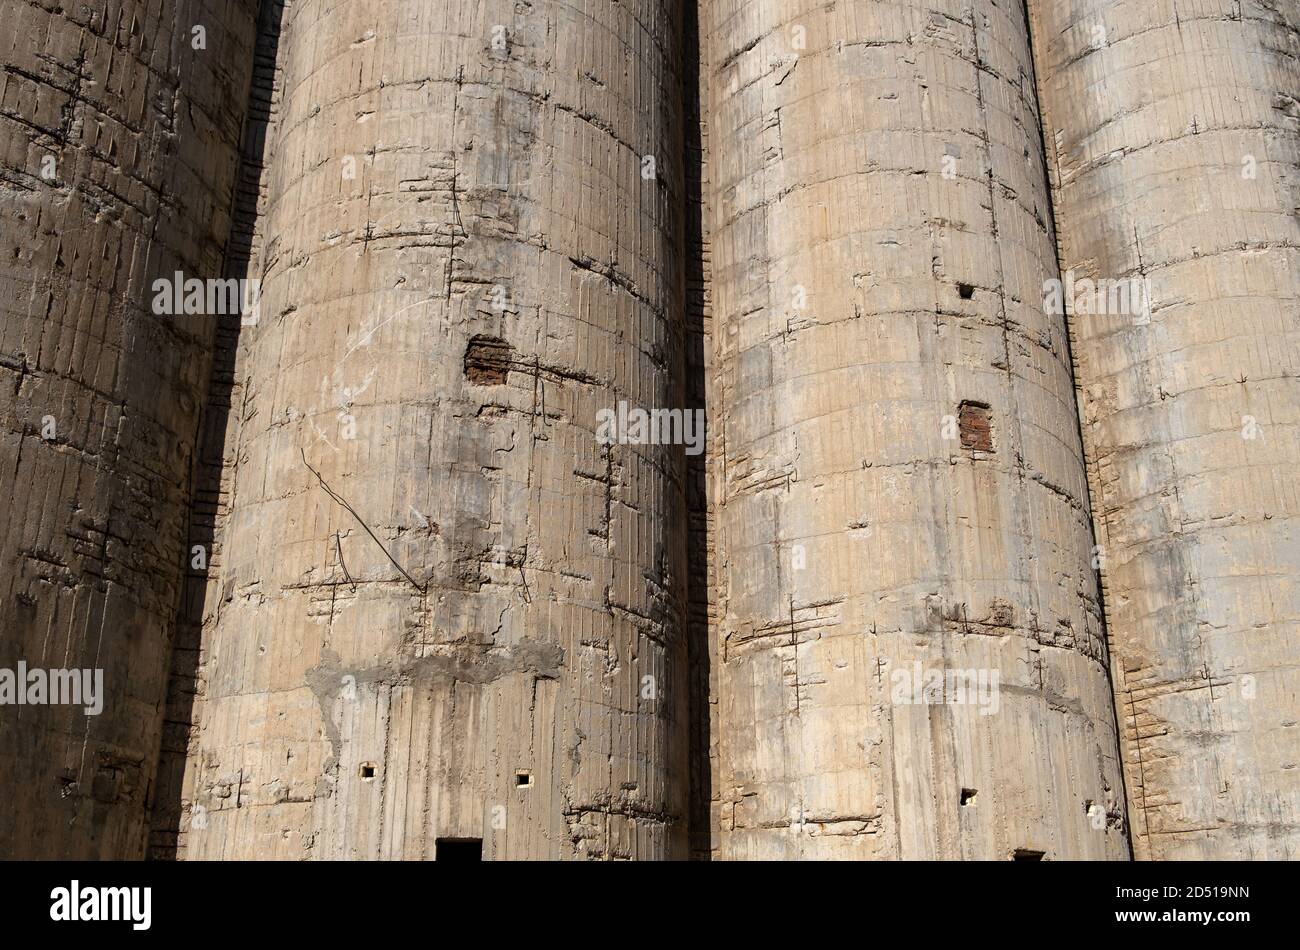 Les silos en béton détaillent la texture d'arrière-plan. Ancienne usine industrielle abandonnée, béton ruiné et acier rouillé, ragoût de clôture. Banque D'Images